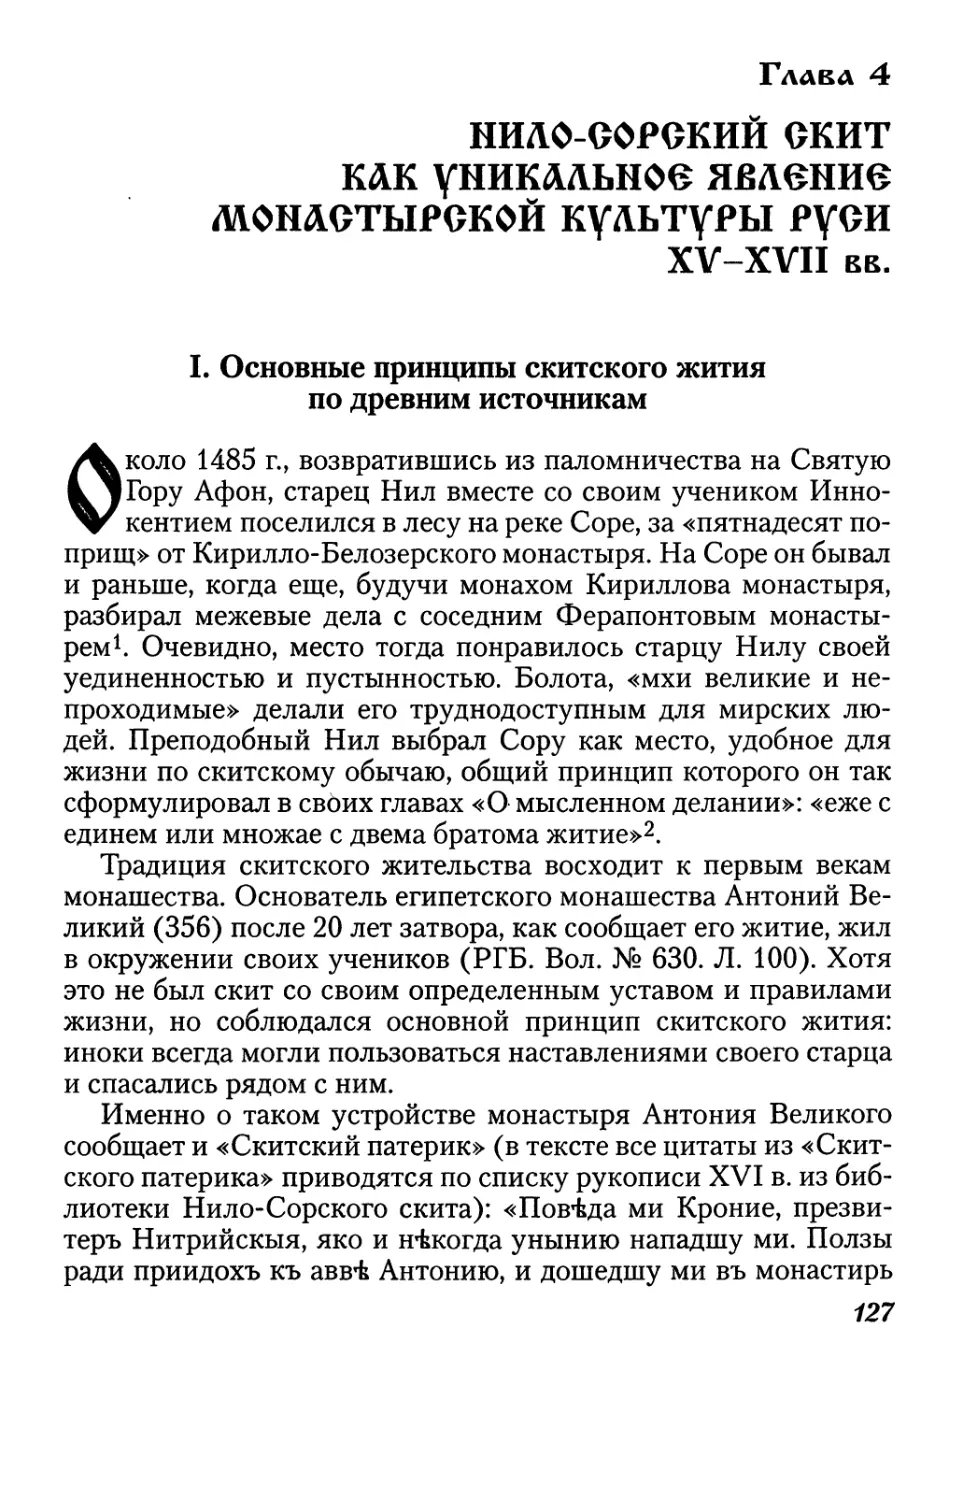 Глава 4. Нило-Сорский скит как уникальное явление монастырской культуры Руси XV-XVII вв.